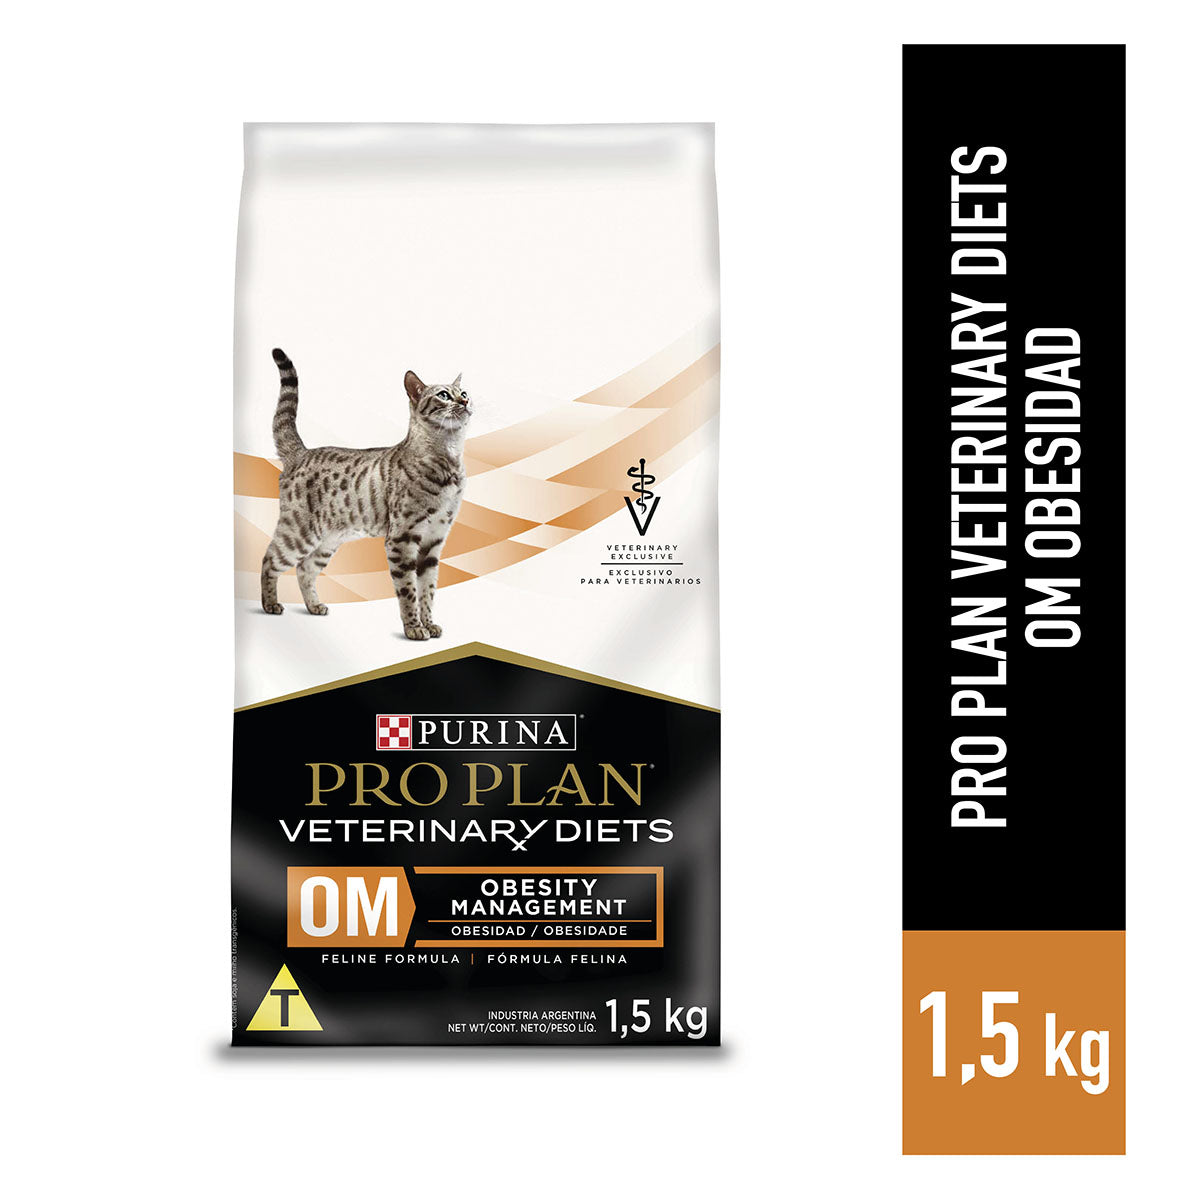 Pro Plan Veterinary Diets OM 1.5kg - Tratamiento para la Obesidad en gatos